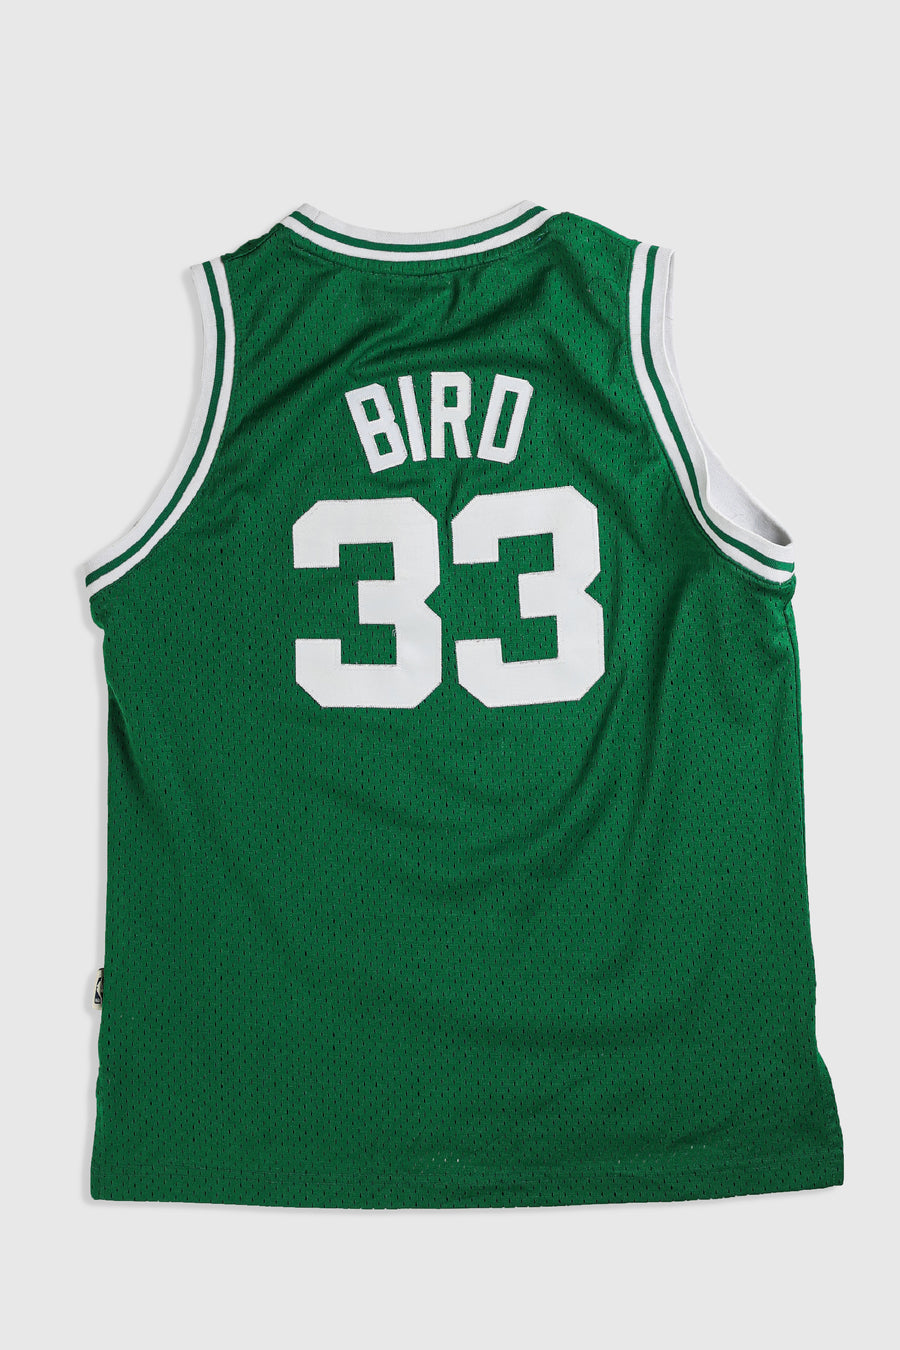 Vintage Celtics Jersey